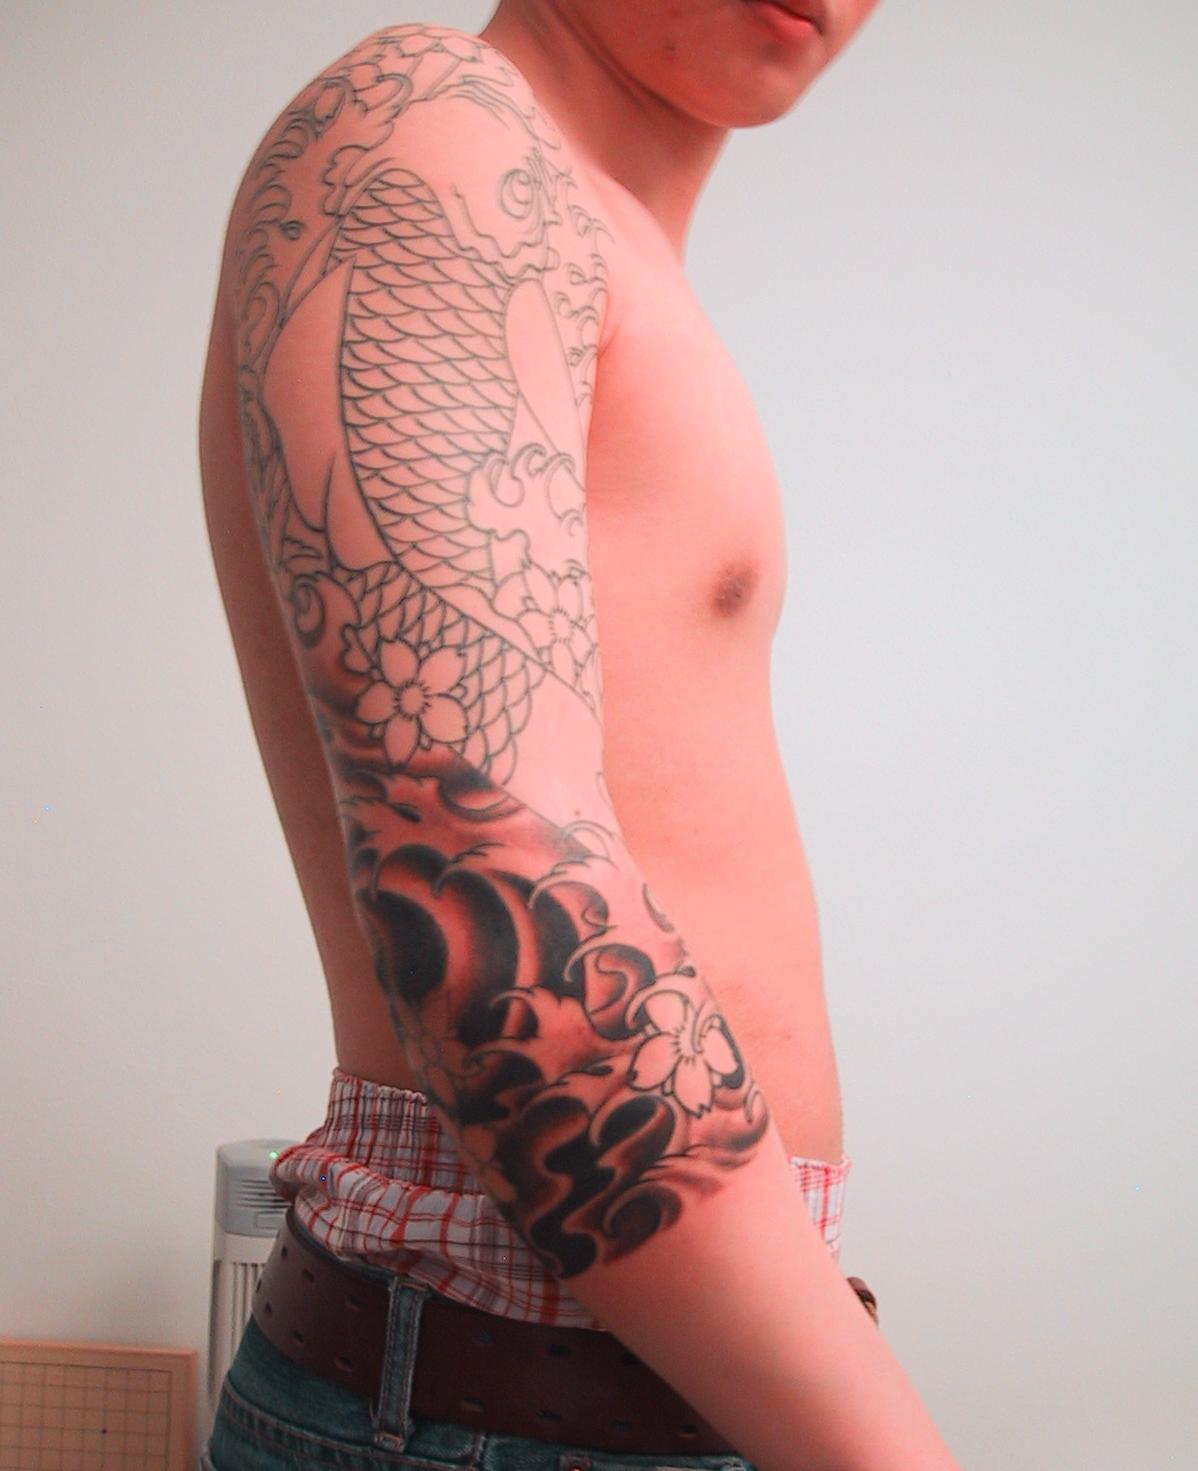 full sleeve tattoo designs,full sleeve tattoos,full sleeve tattoos ideas,japanese full sleeve tattoo designs